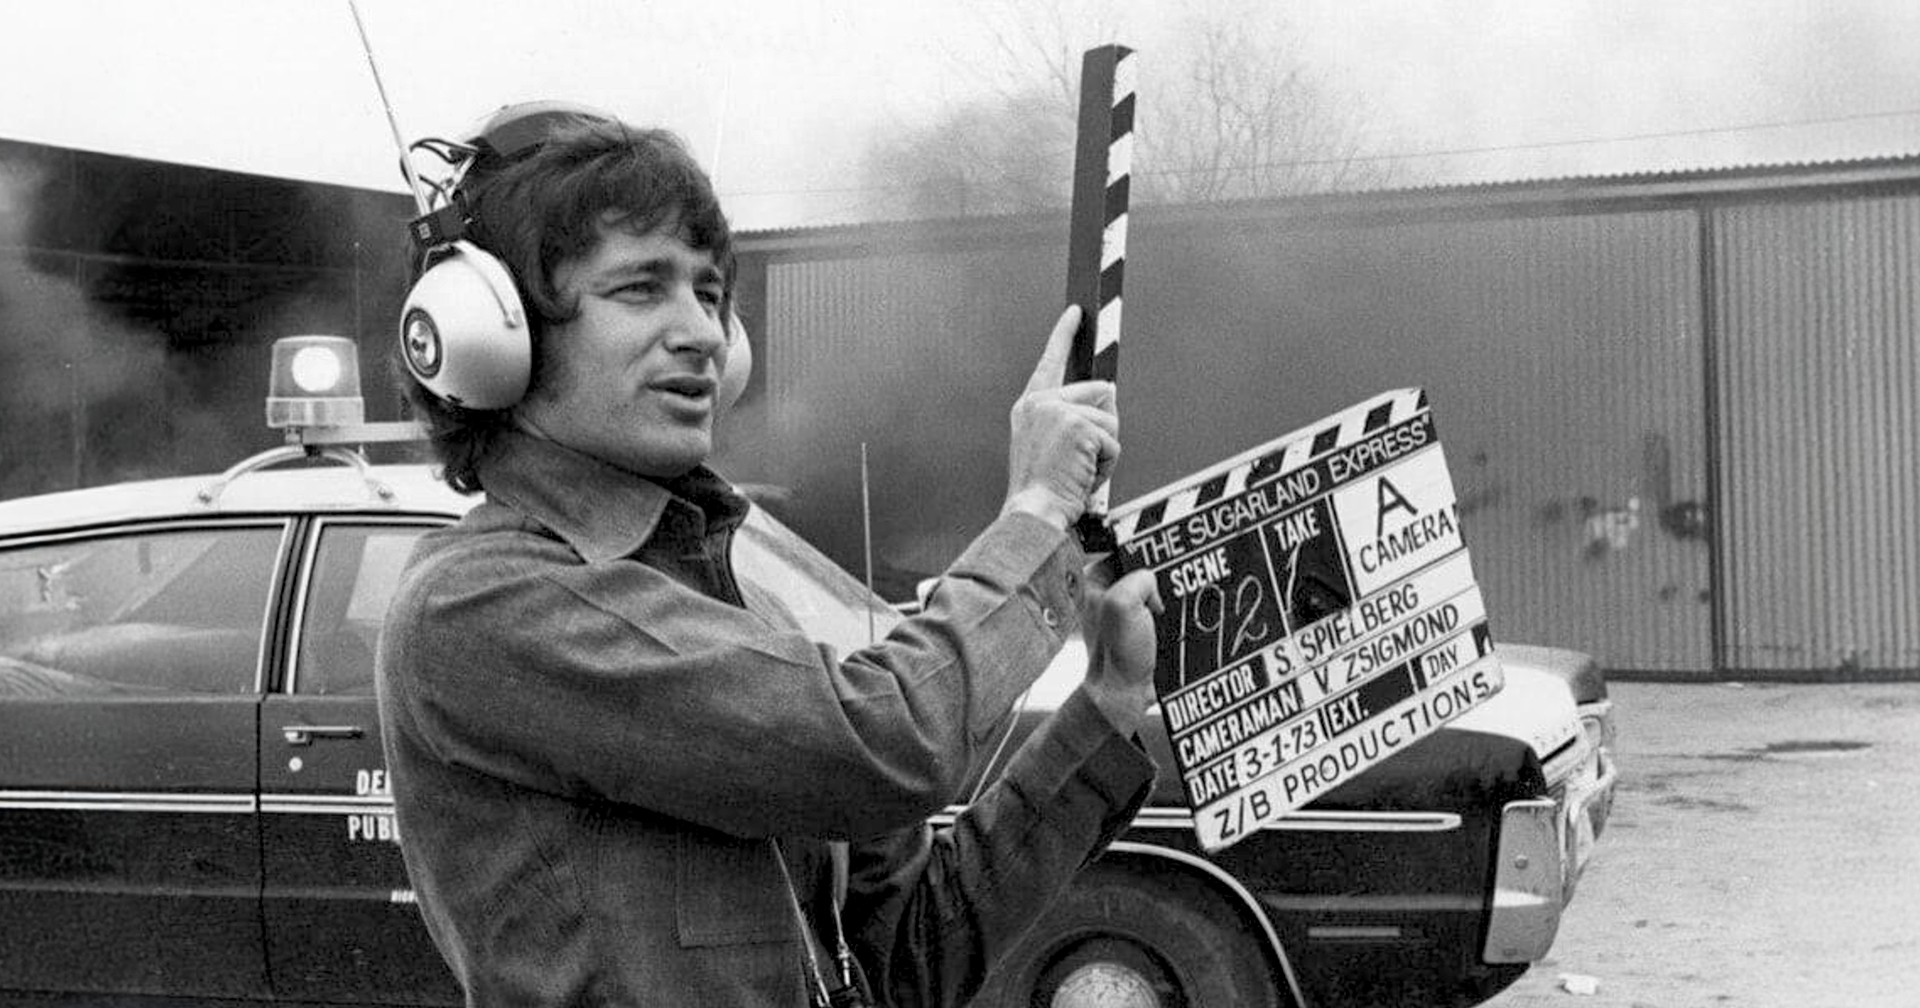 อย่าขัดจังหวะ ! Steven Spielberg ขว้าง Apple Watch ที่อยู่ดี ๆ ก็ส่งเสียงเตือนฉุกเฉิน ระหว่างฉลองหนัง ‘Sugarland Express’ ครบรอบ 50 ปี